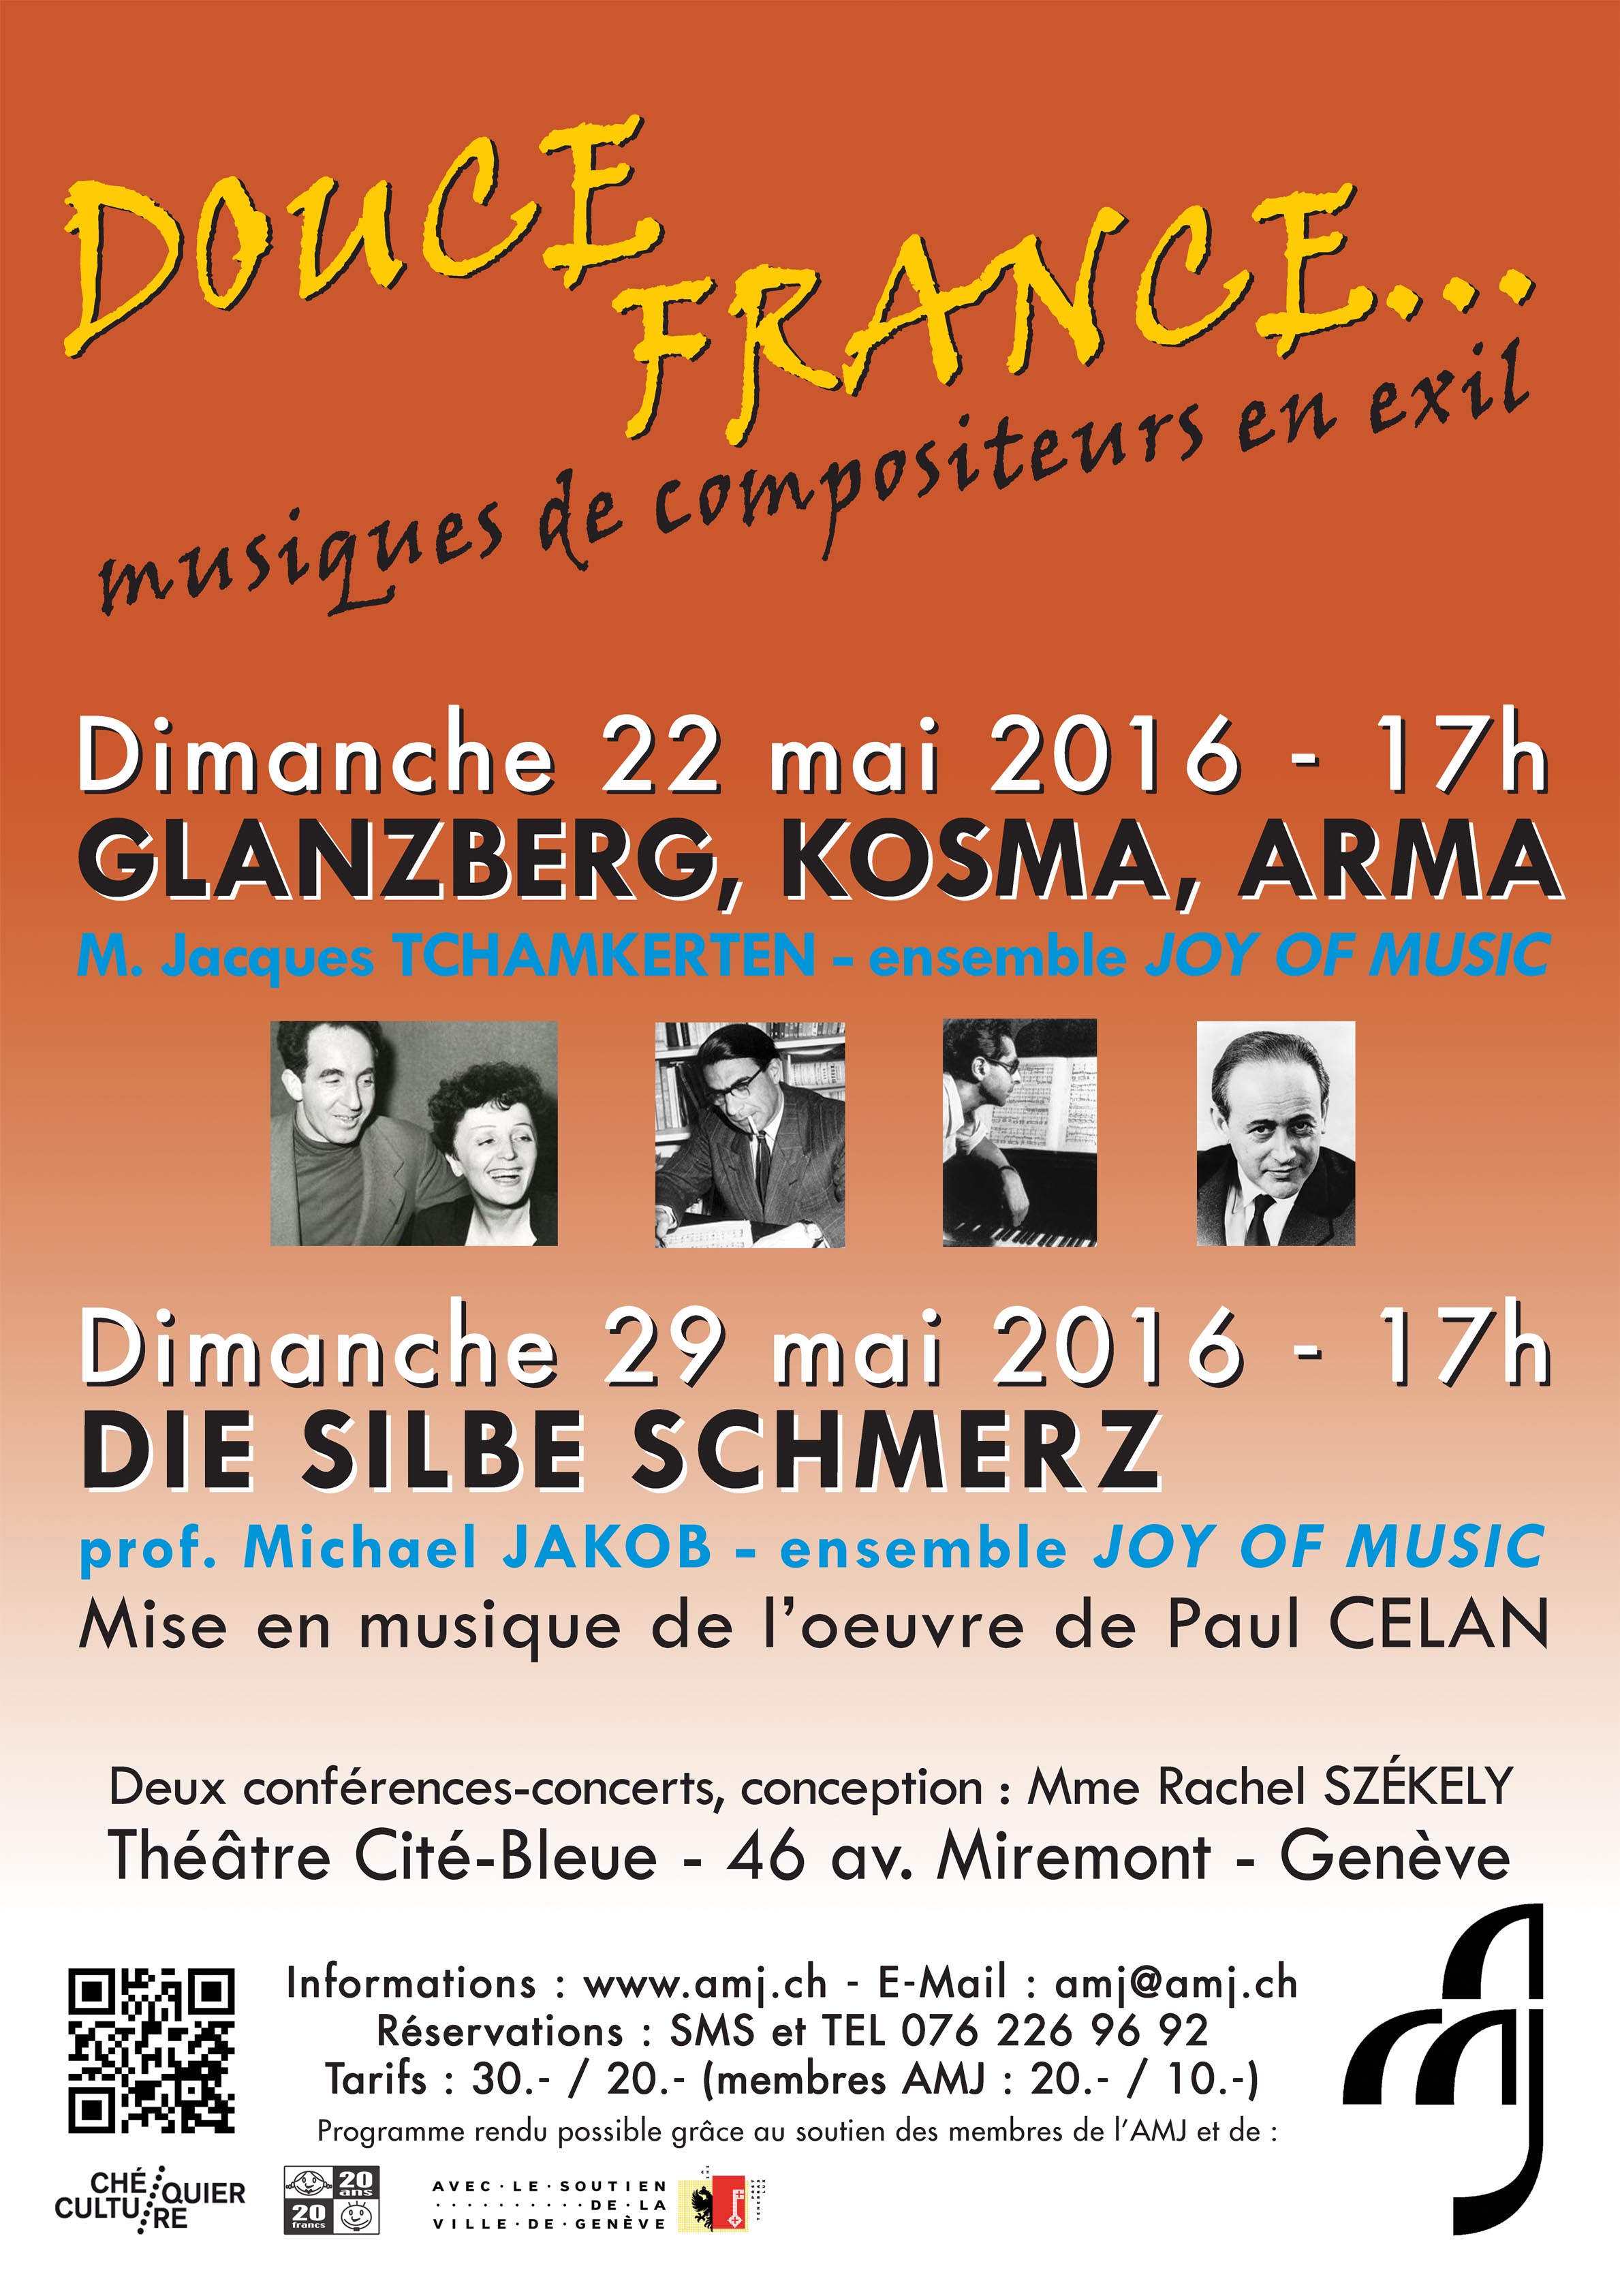 Douce France...musiques de compositeurs en exil - concert AMJ - les amis de la musique juive - Friends of jewish music